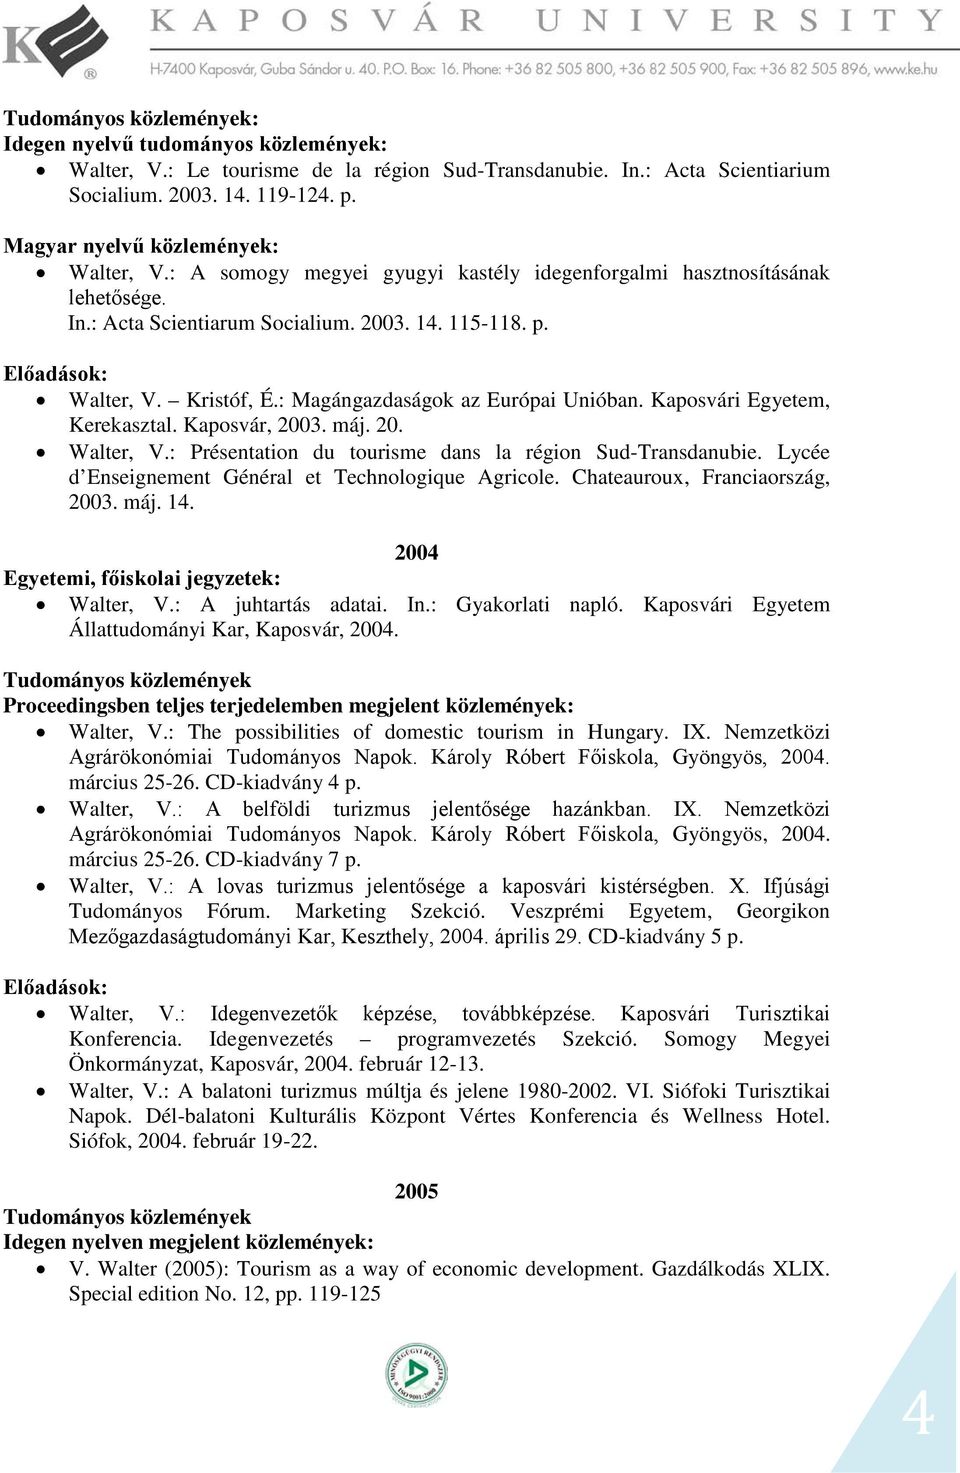 : Magángazdaságok az Európai Unióban. Kaposvári Egyetem, Kerekasztal. Kaposvár, 2003. máj. 20. Walter, V.: Présentation du tourisme dans la région Sud-Transdanubie.